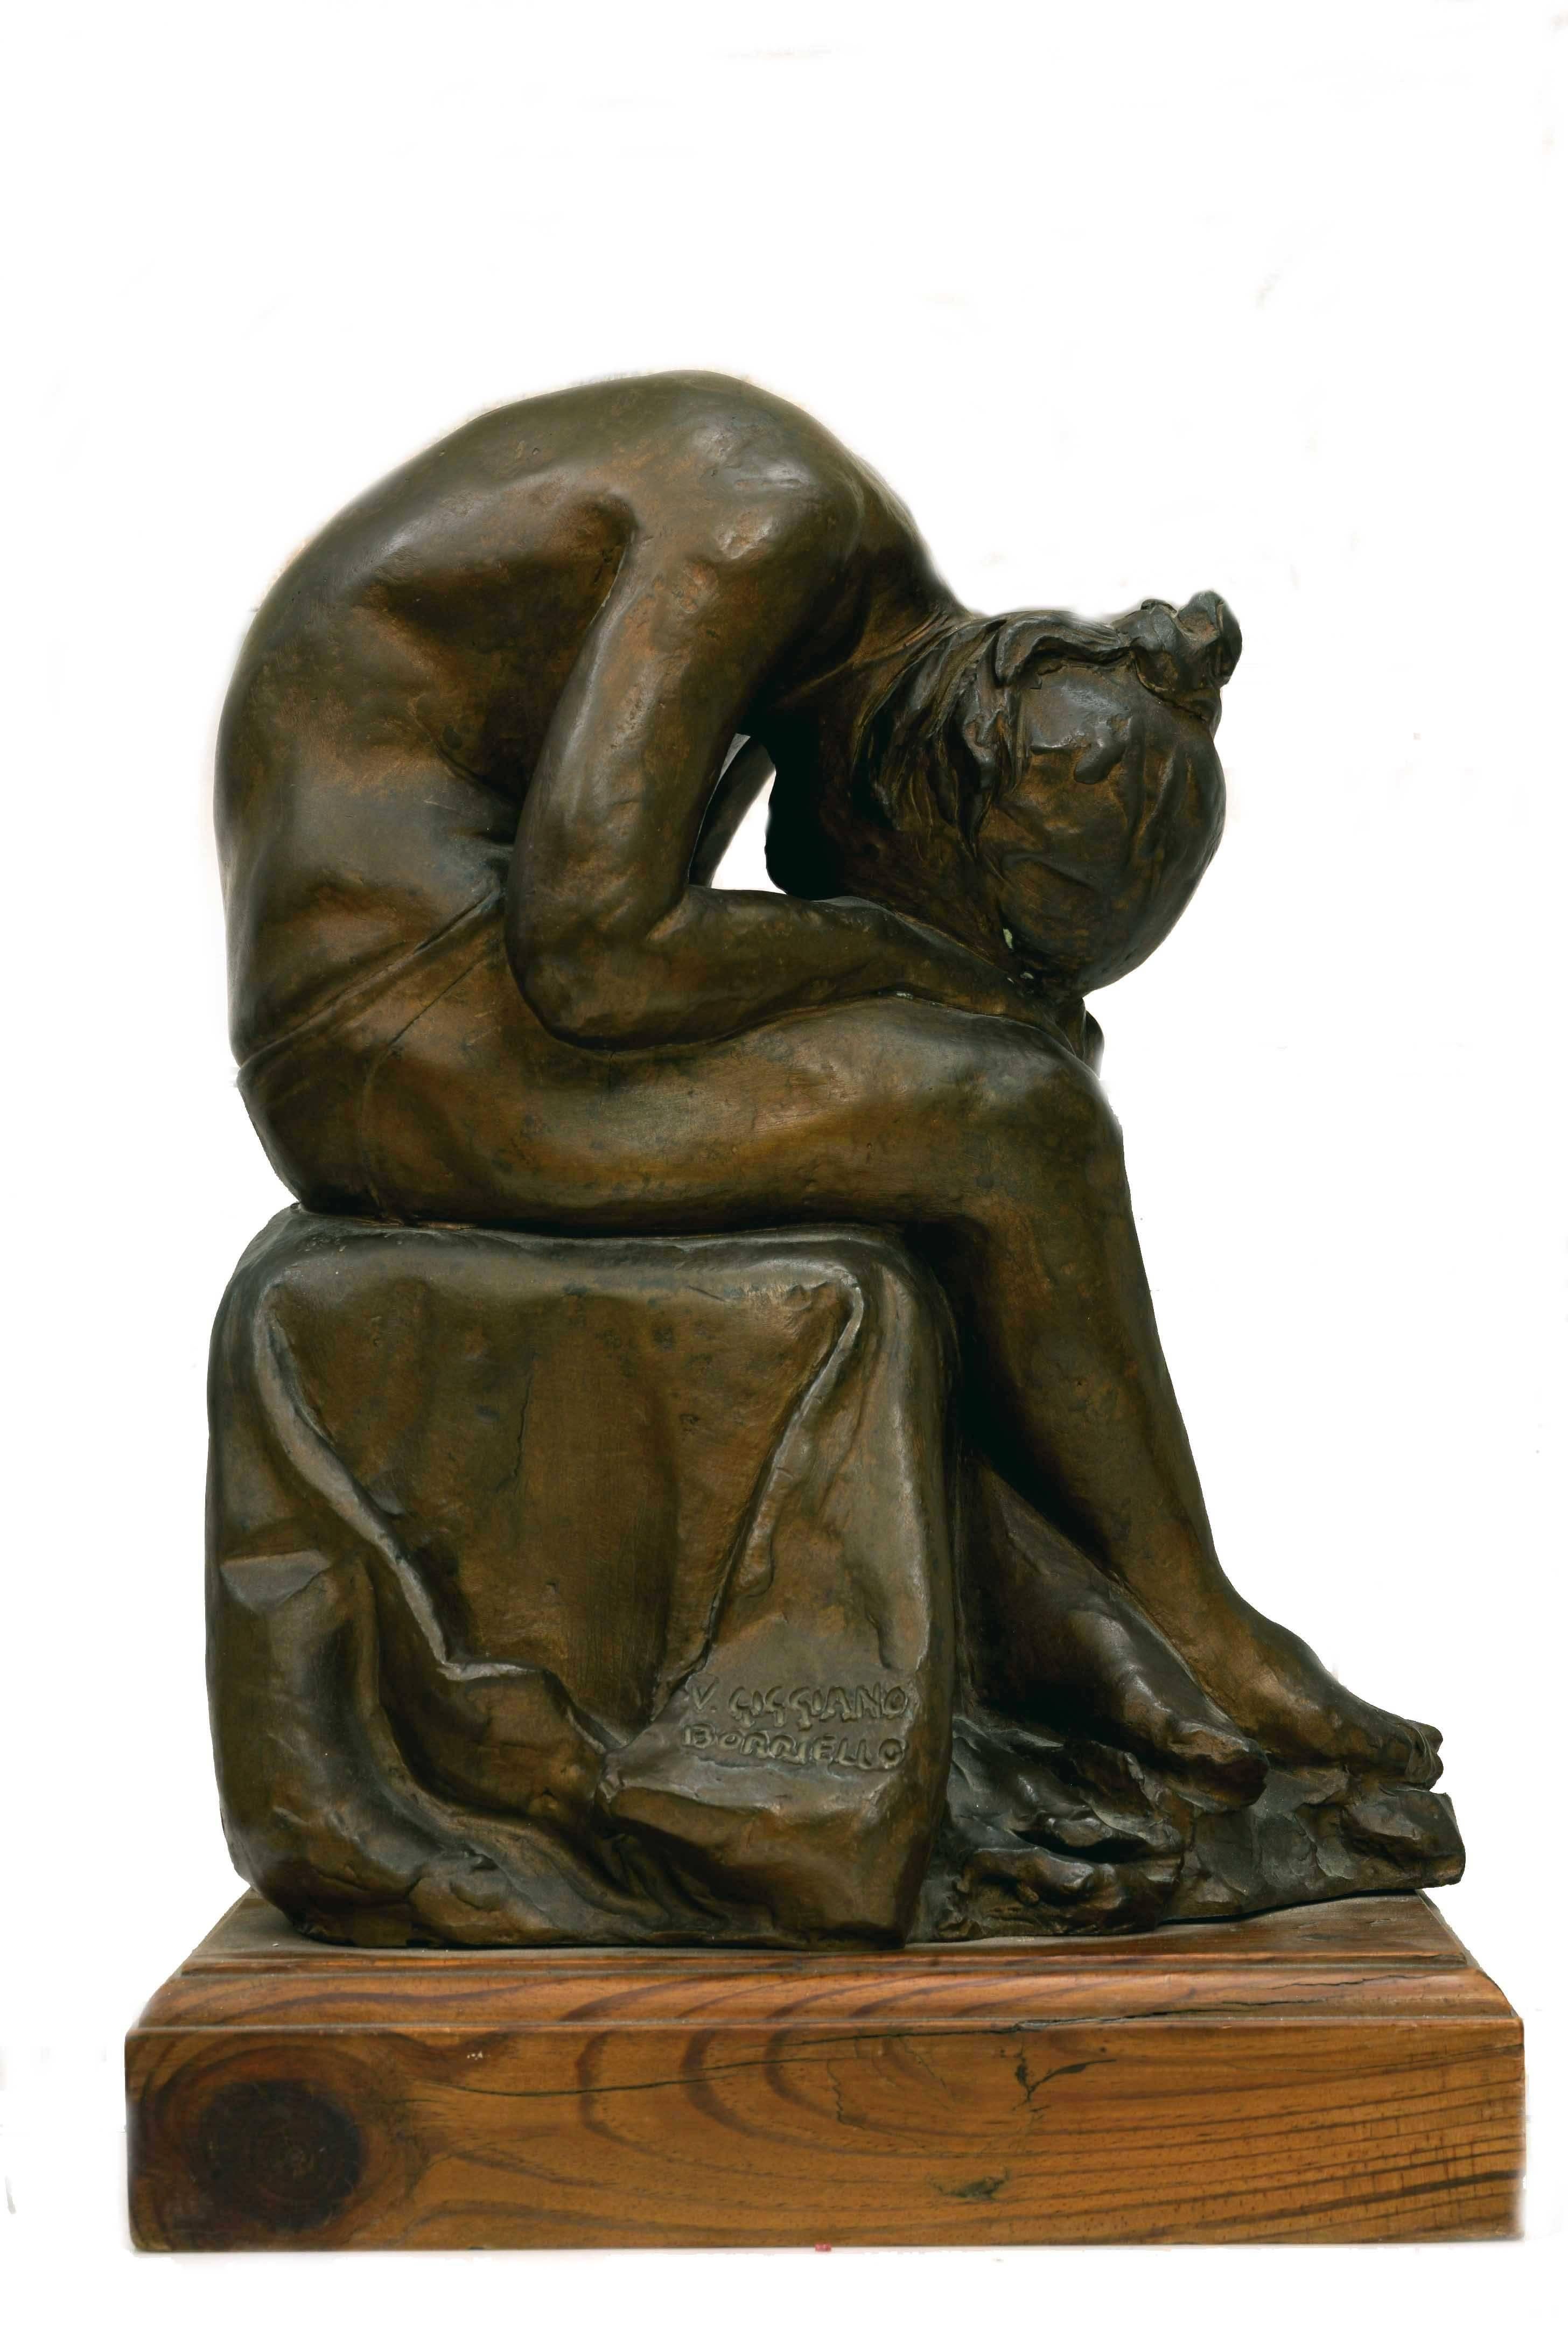 V. Giggiano Borriello Figurative Sculpture - BALLERINA - Bronze Sculpture by Giggiano Borriello